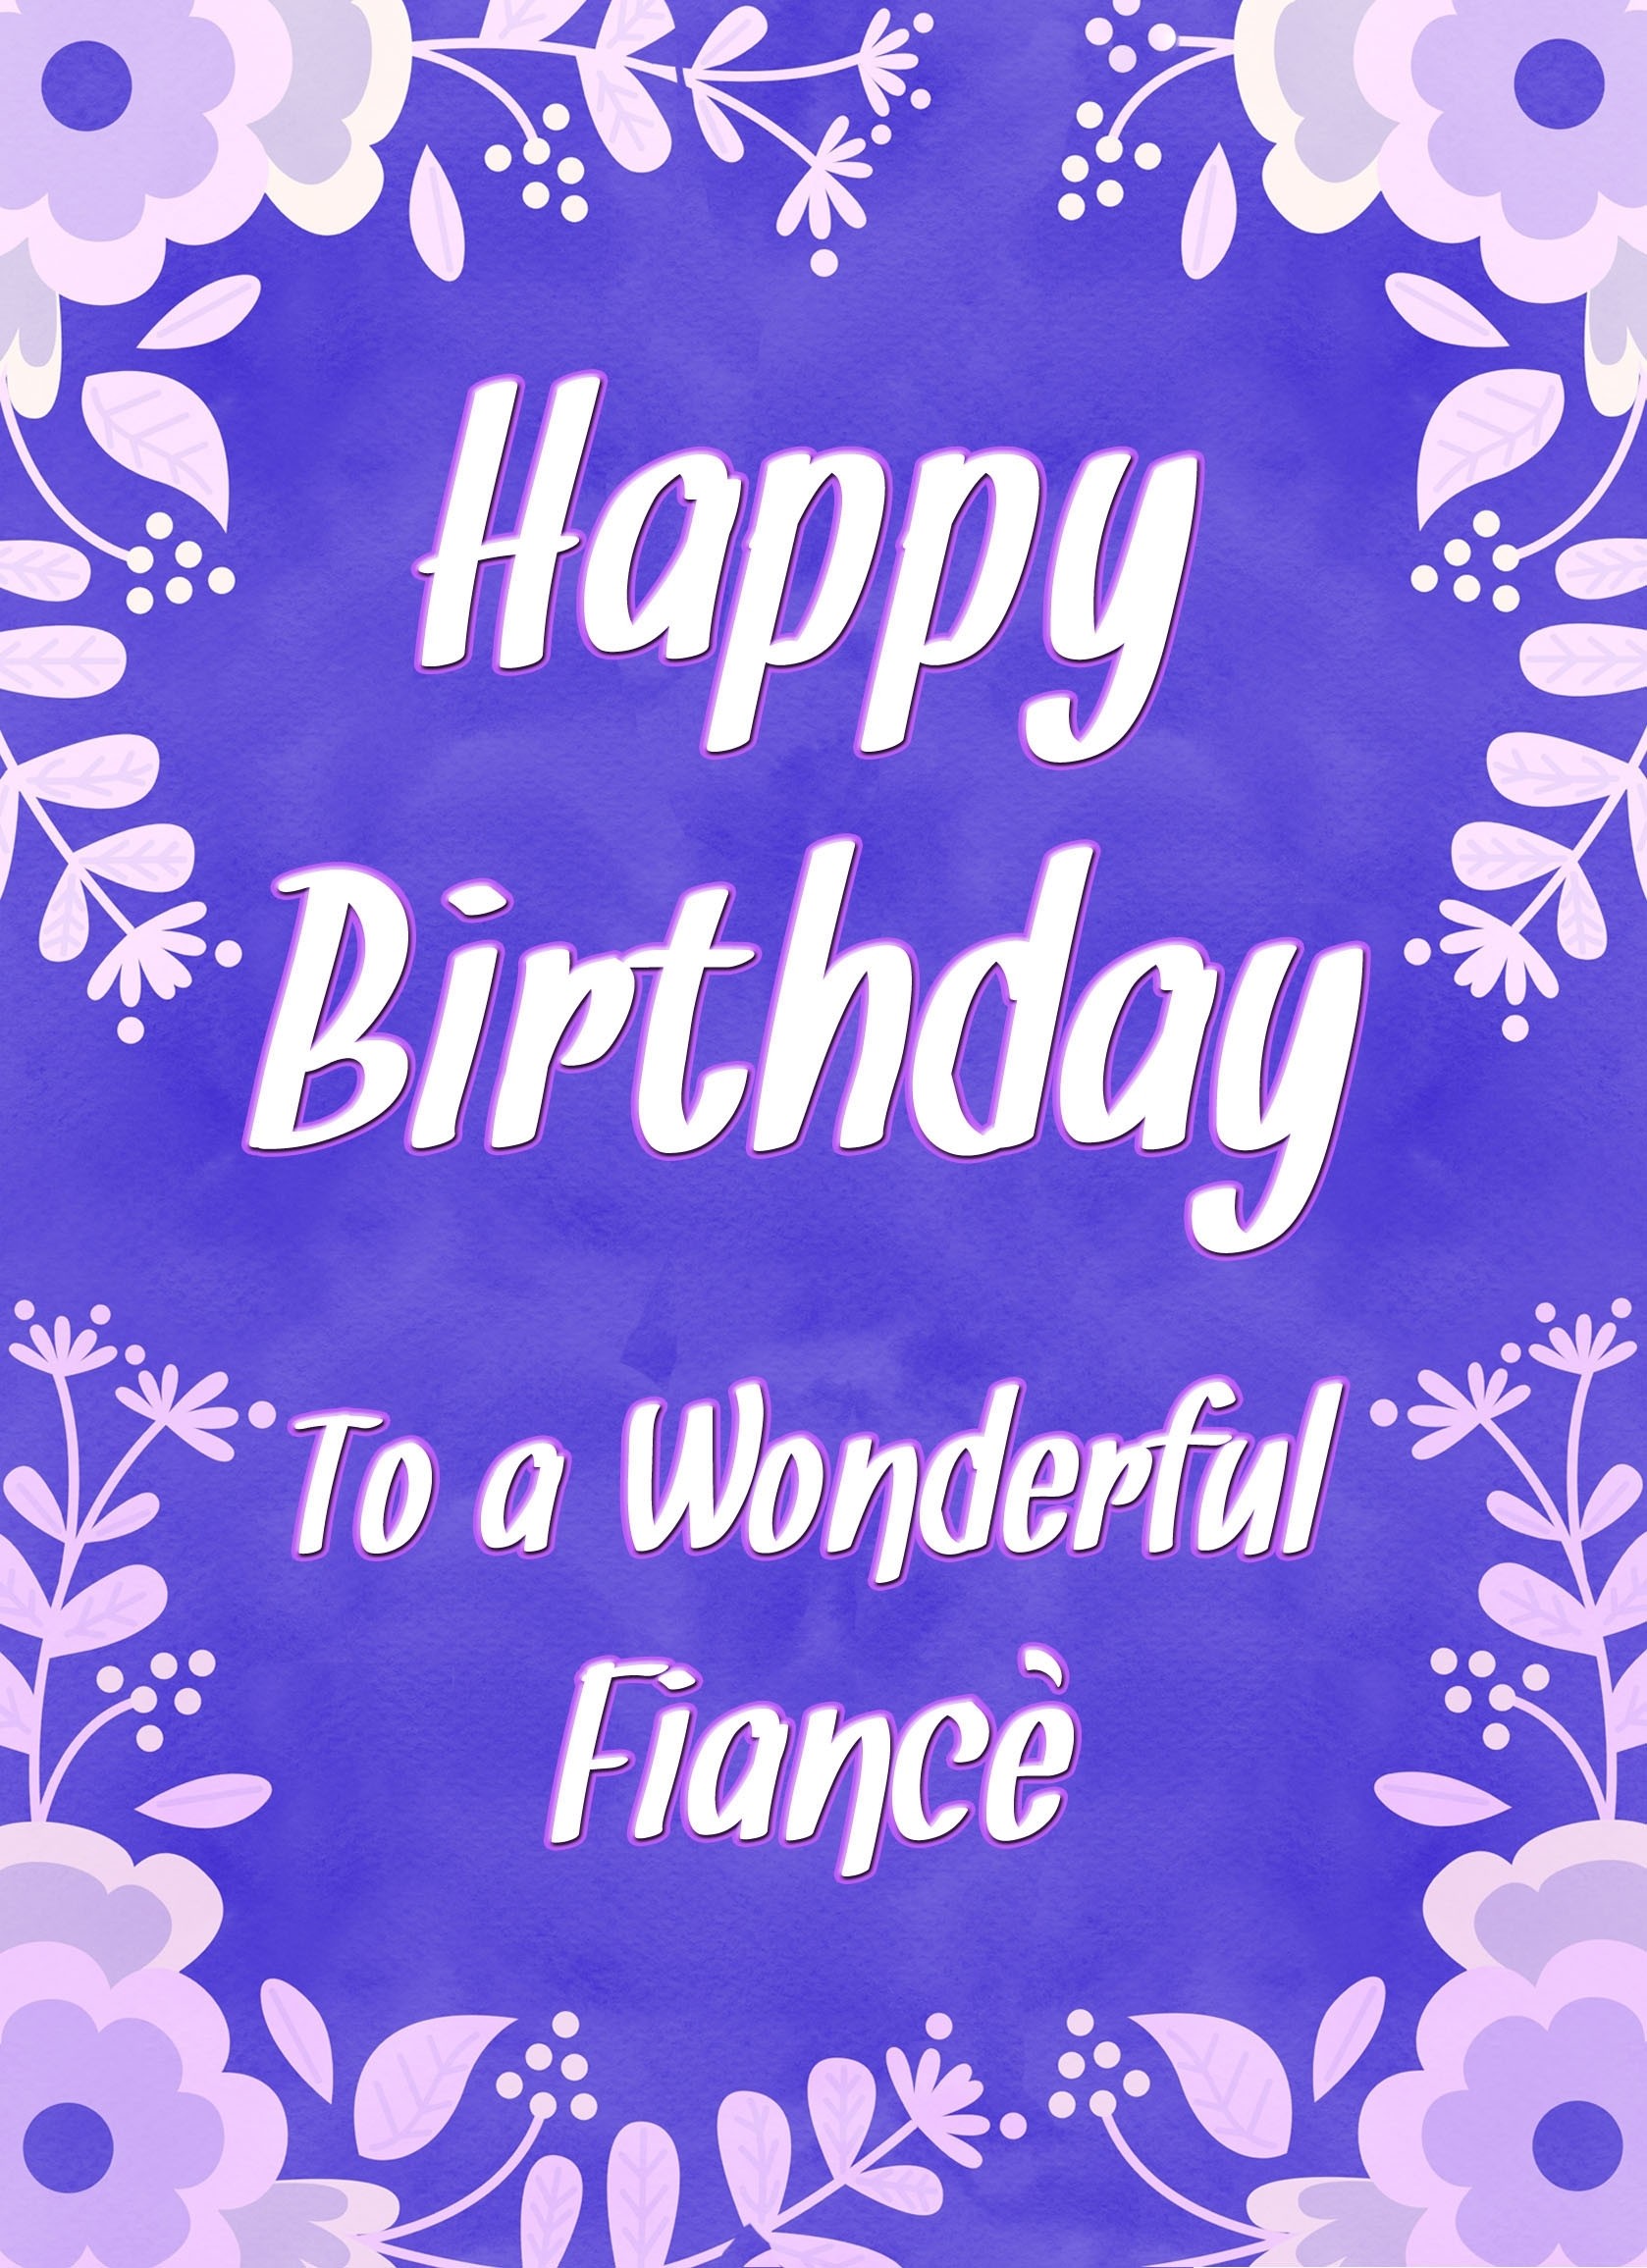 Birthday Card For Wonderful Fiance (Purple Border)